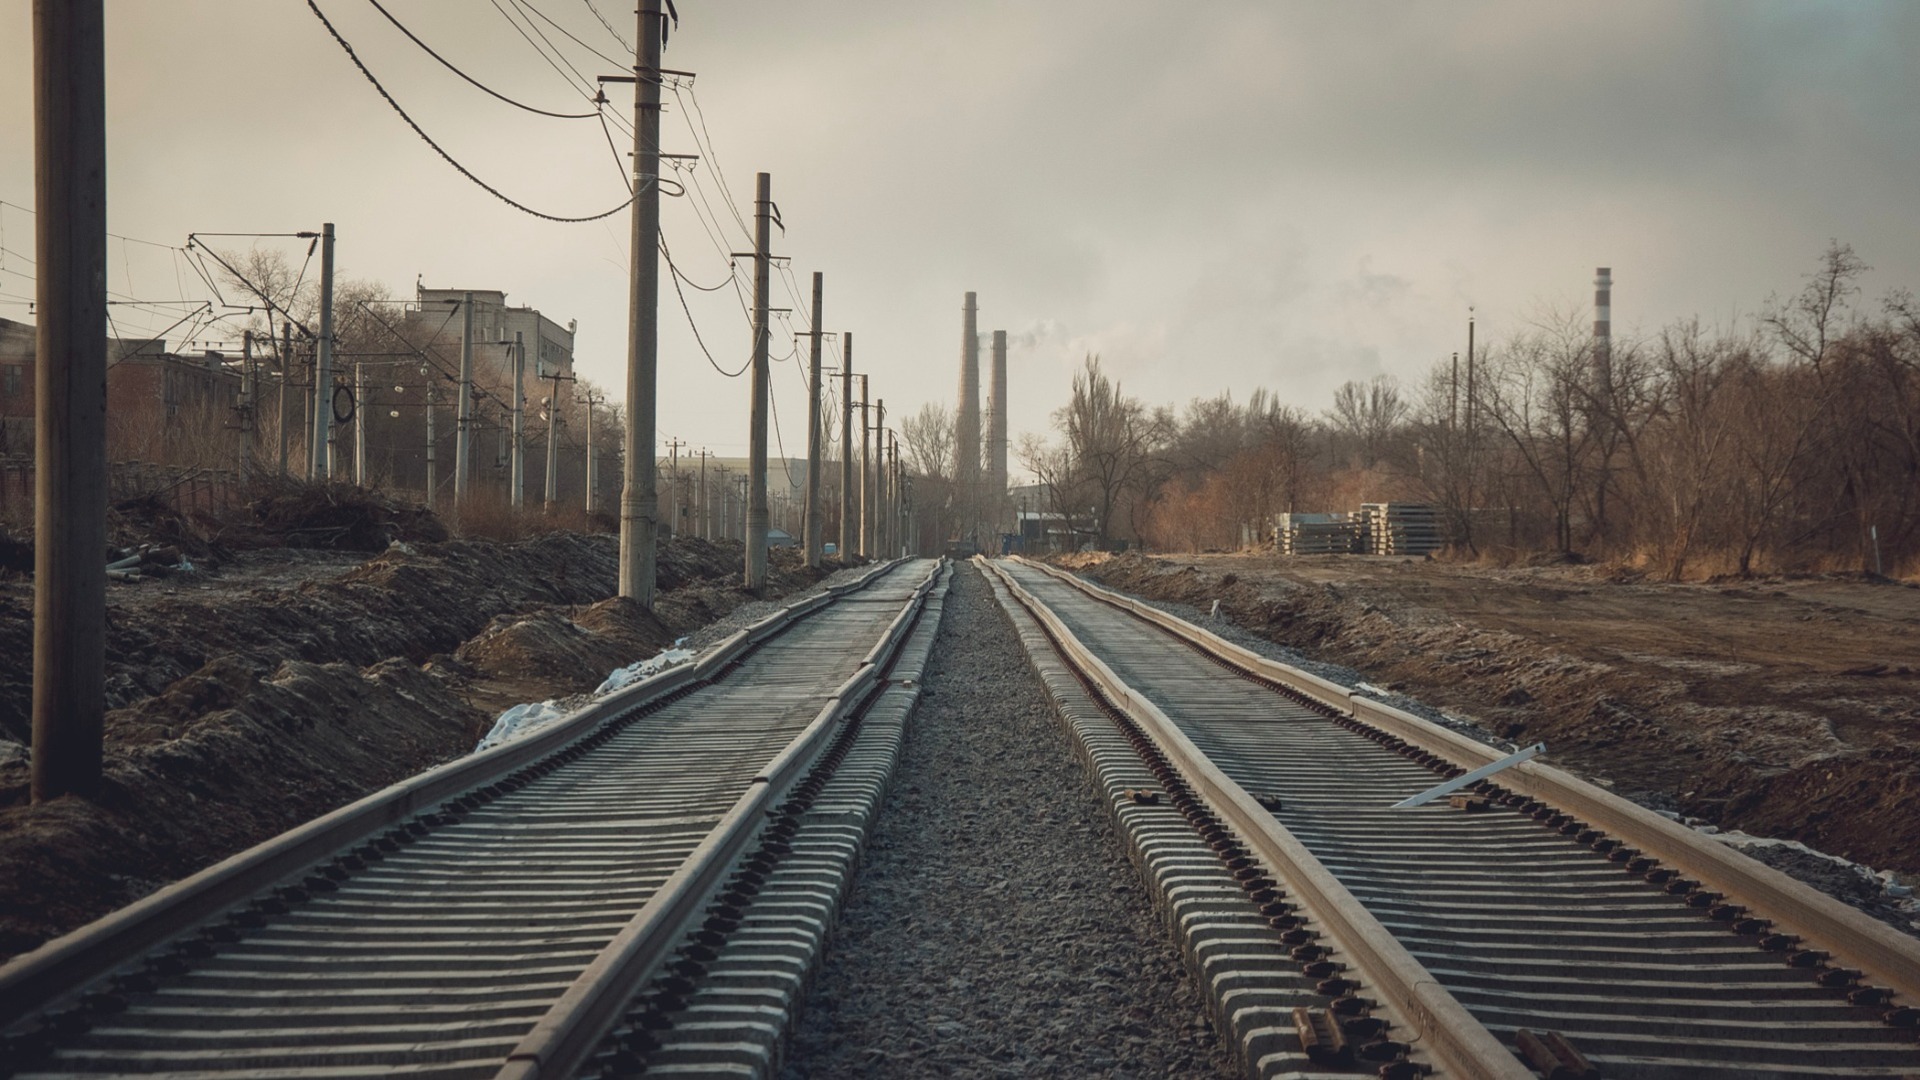 РЖД и Белорусская железная дорога заключили соглашение об инфраструктурном развитии